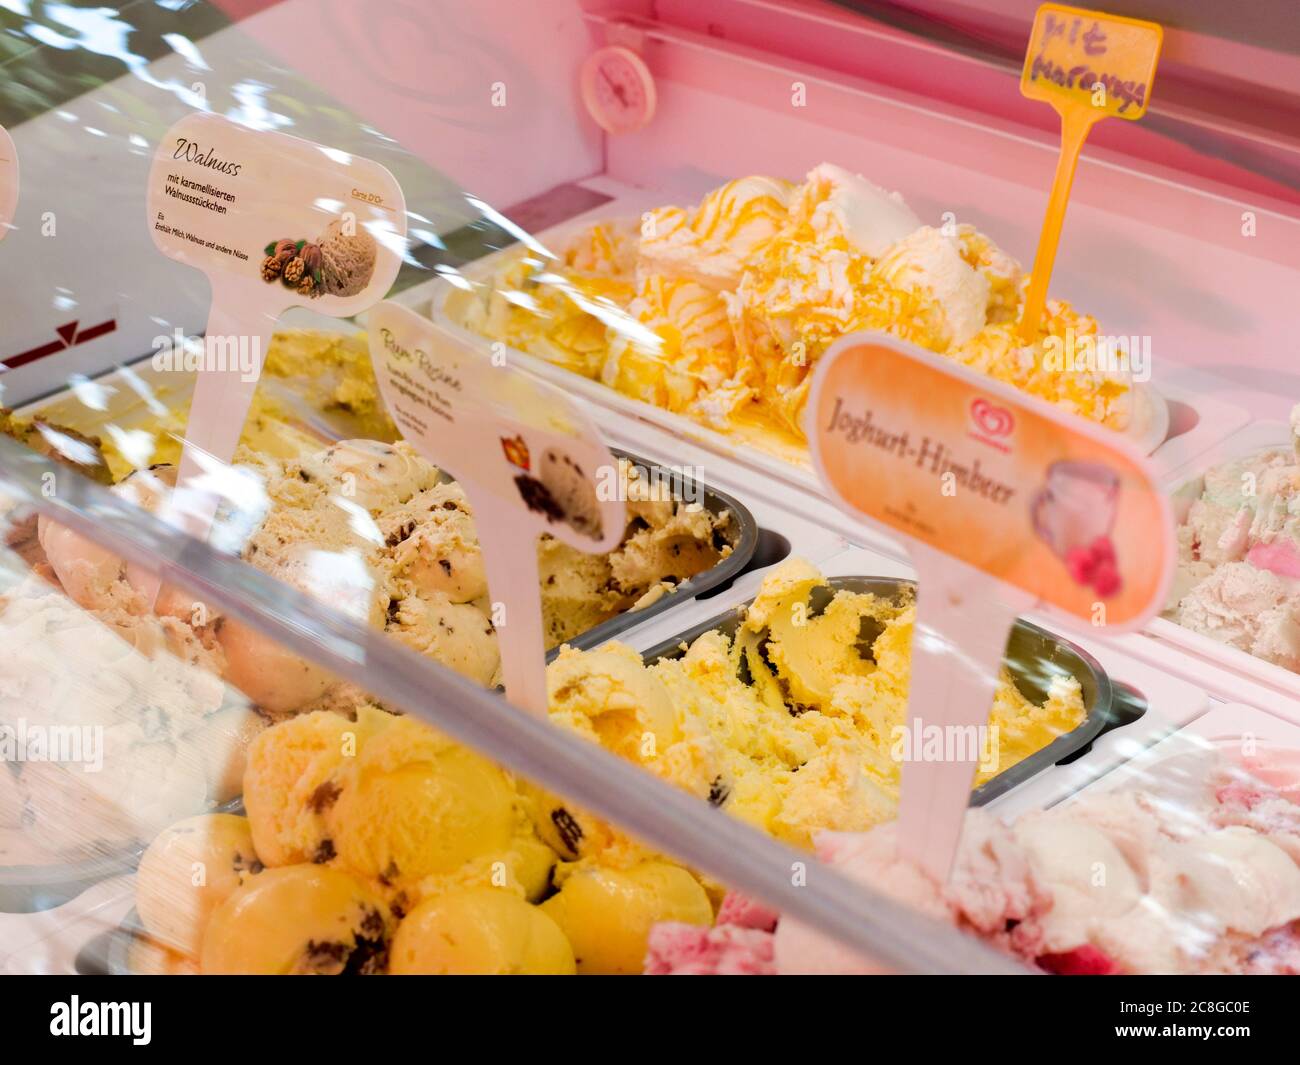 italienisches Speiseeis Eis in einer Kühltheke einer Eisdiele Café Eiscafé verschiedene Sorten Sanddorn Stracciatella Joghurt Walnuss Auswahl Eiscreme Stock Photo